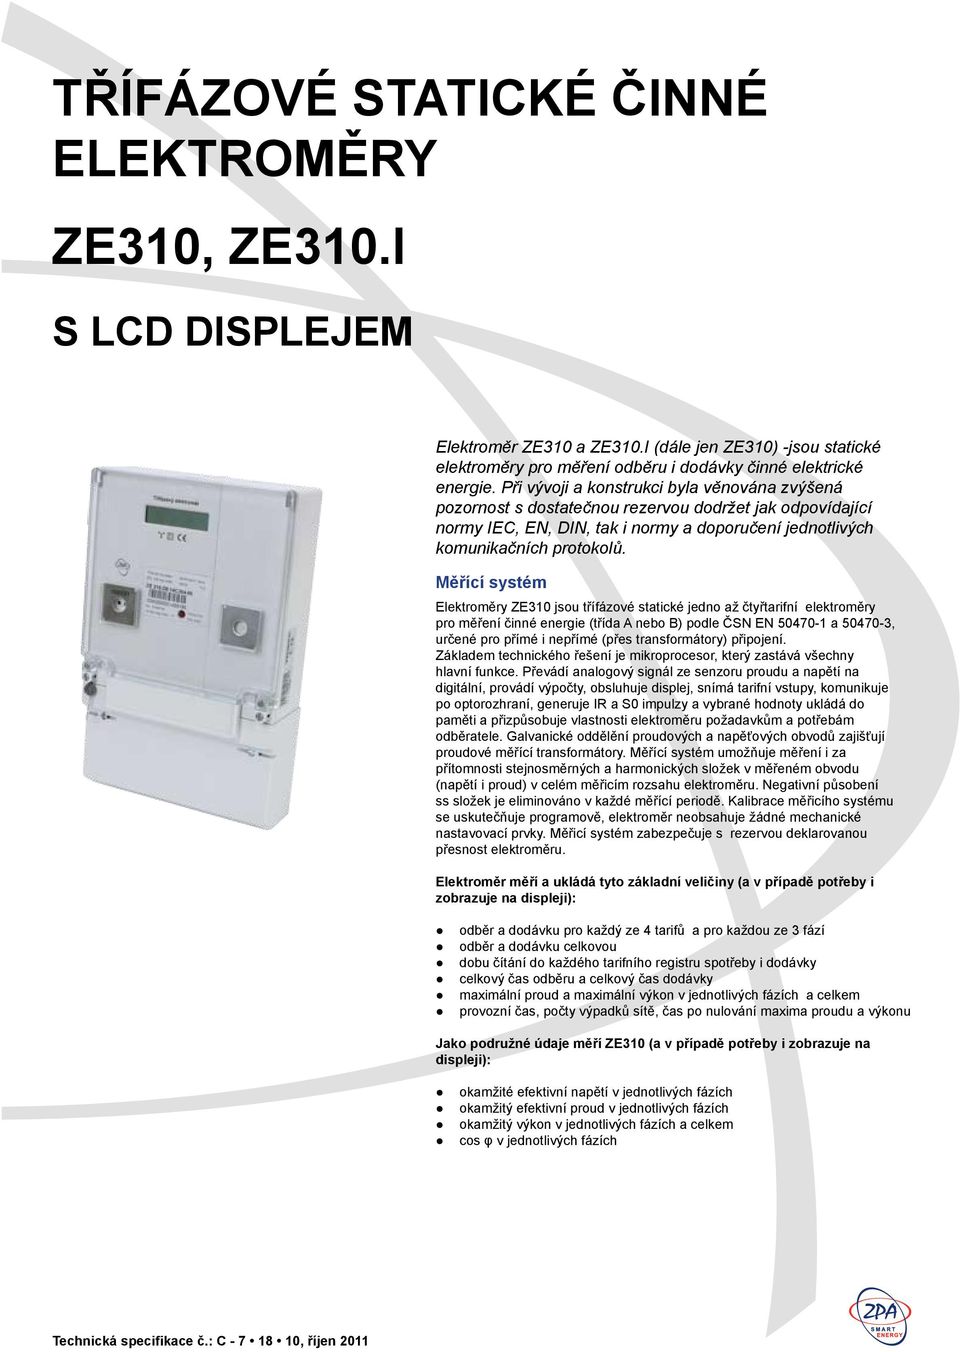 Měřící systém Elektroměry ZE310 jsou třífázové statické jedno až čtyřtarifní elektroměry pro měření činné energie (třída A nebo B) podle ČSN EN 50470-1 a 50470-3, určené pro přímé i nepřímé (přes